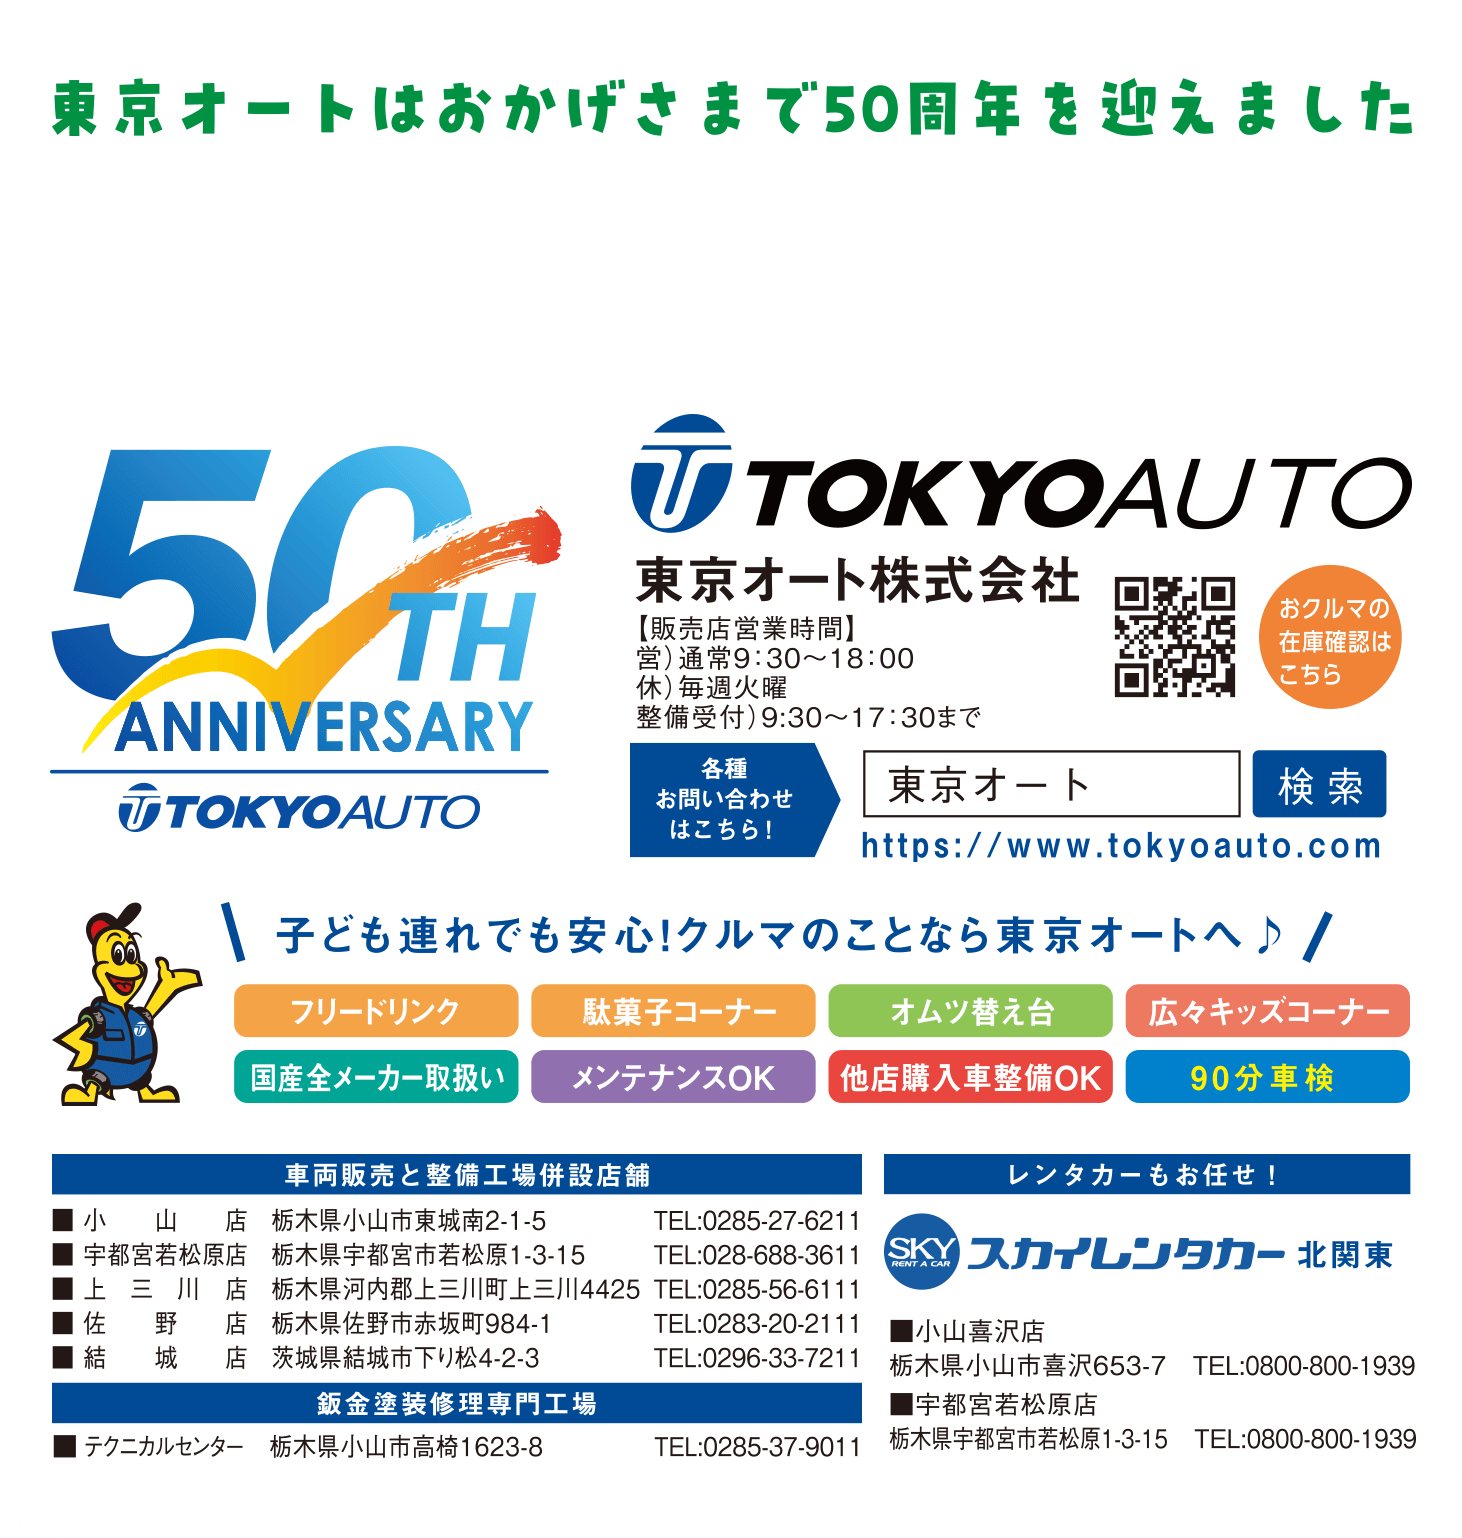 東京オートはおかげさまで50周年を迎えました